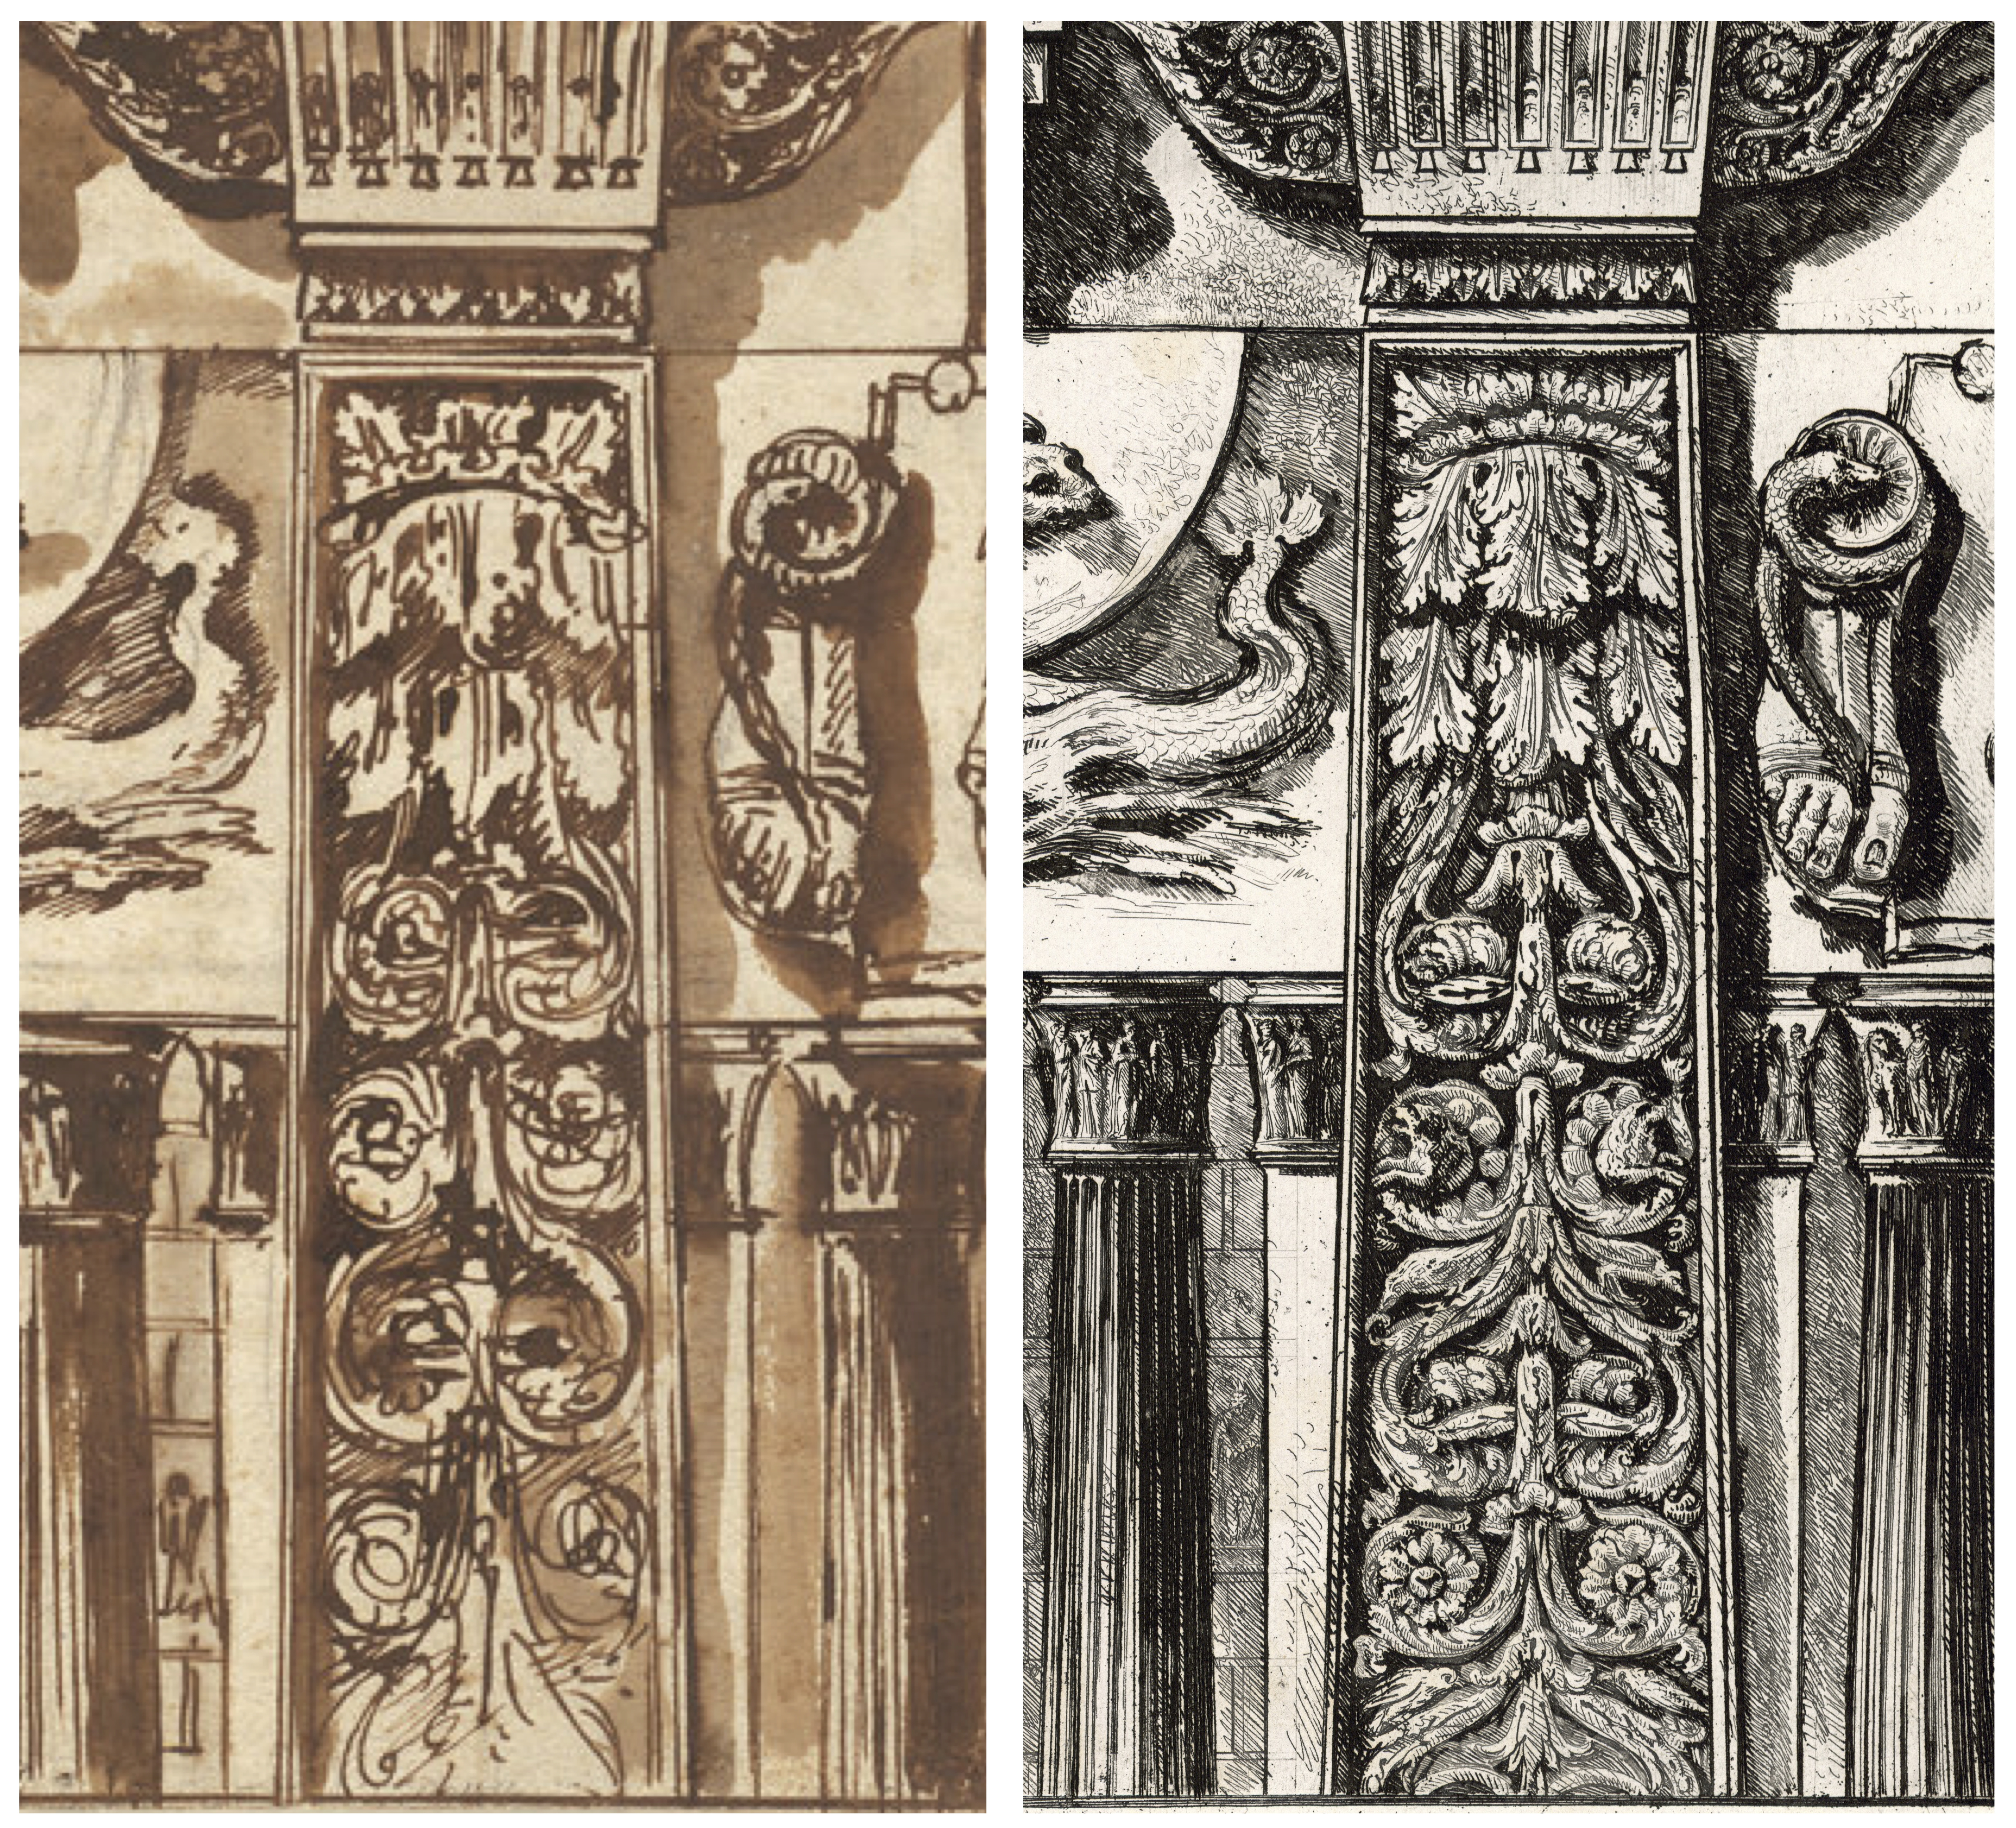 Bildmontage eines Details aus der Radierung Piranesis mit einem Zeichnungsdetail der Federzeichnung aus der National Gallery of Art in Washington